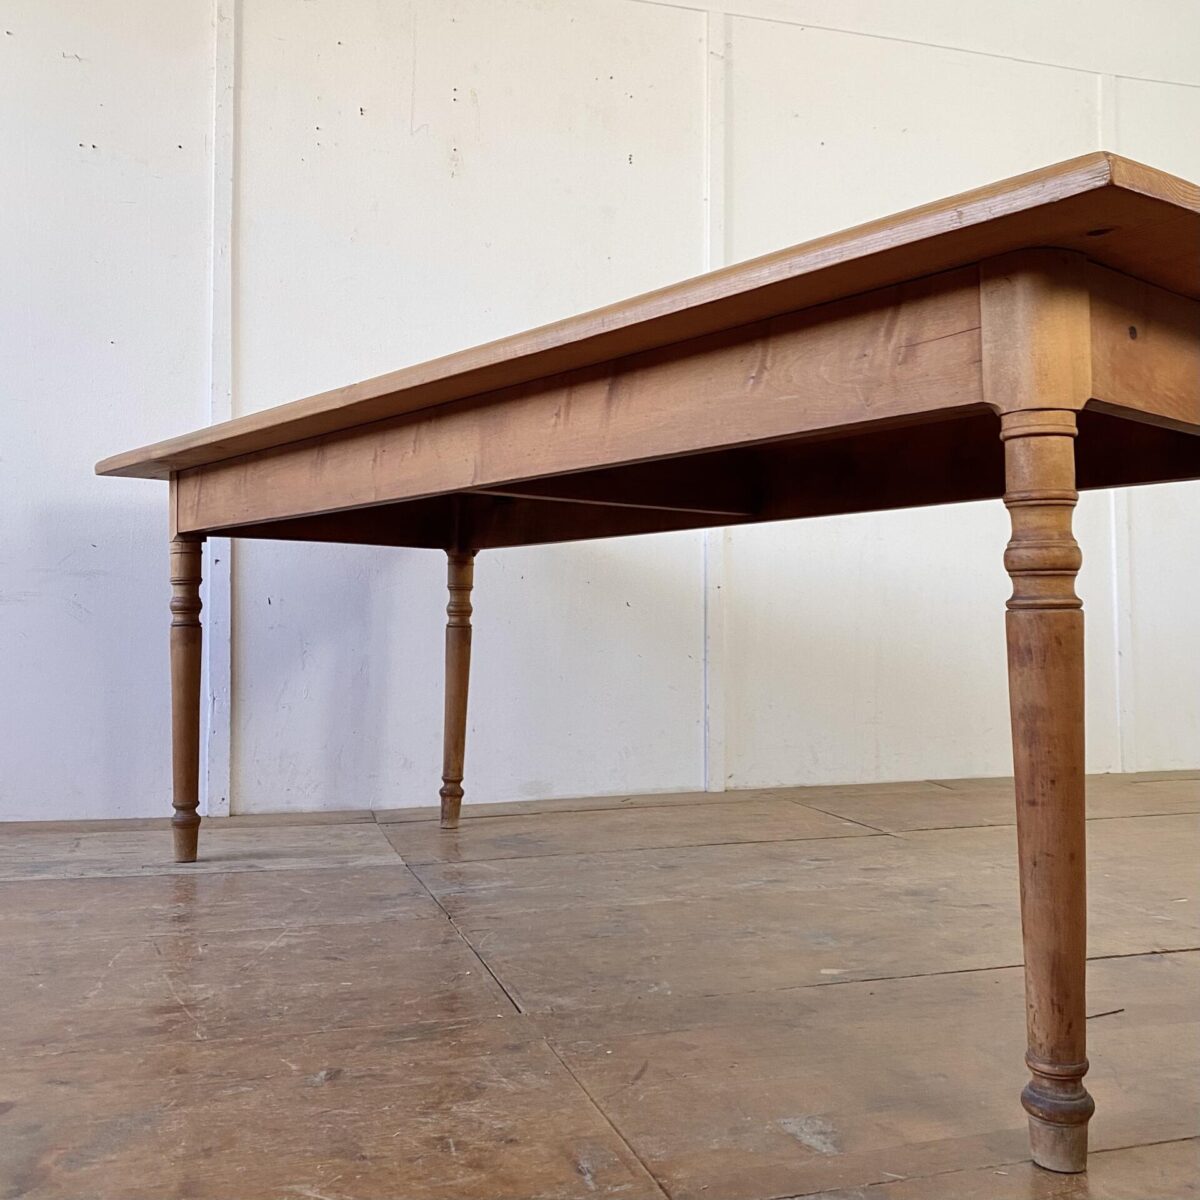 Deuxieme.shop Beizentisch alter Holztisch. Esstisch aus Tanne mit gedrechselten Rundbeinen. 210x87cm Höhe 76.5cm. Der Tisch ist in stabilem Zustand, leichte Gebrauchsspuren und Patina. 